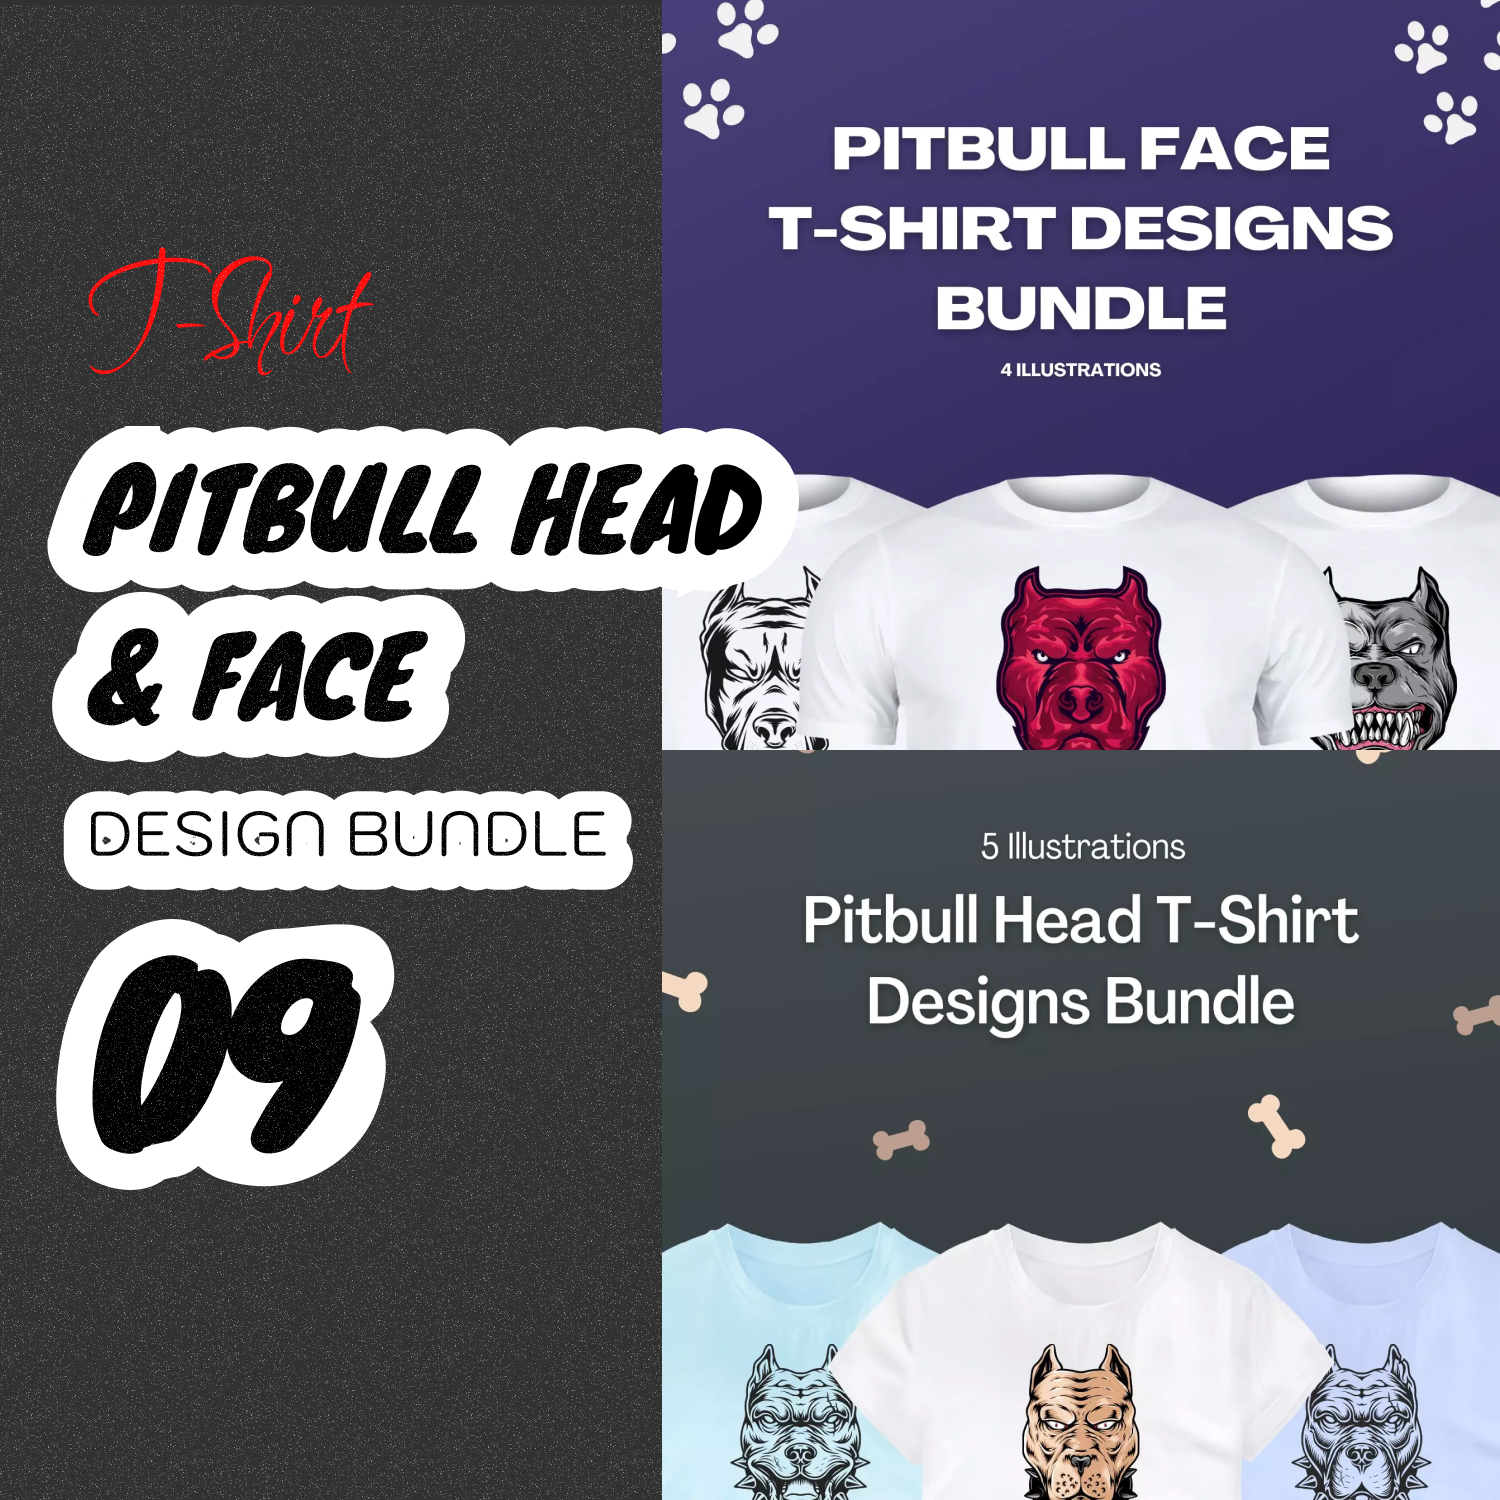 Preview pitbull head face svg t shirt designs bundle.